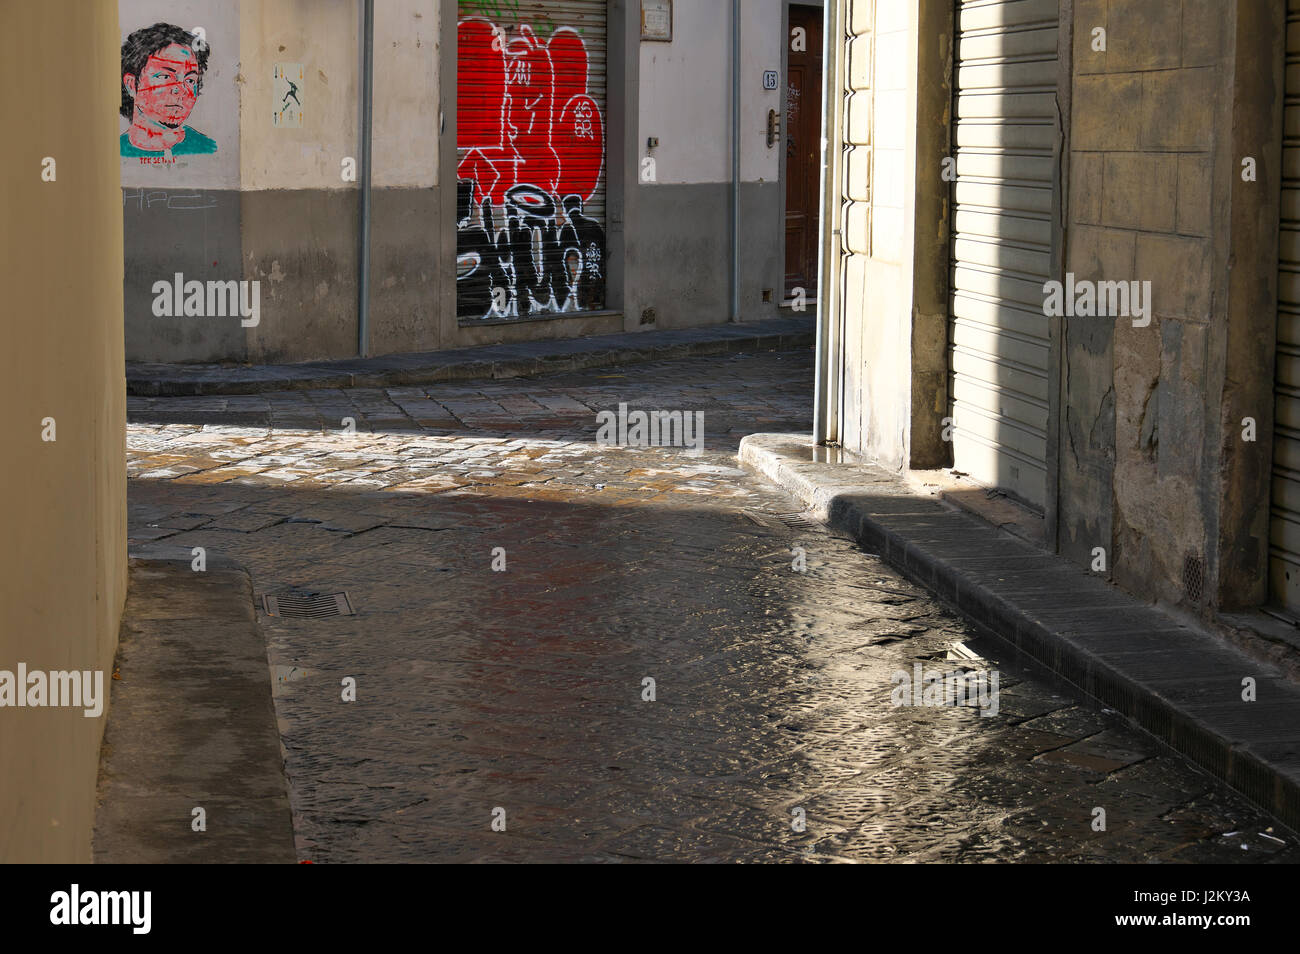 Il sole splende dopo la pioggia, pavimento bagnato in un vicolo di Firenze, Firenze, Toscana, Italia, Europa - colorata graffiti sulle pareti e otturatore Foto Stock